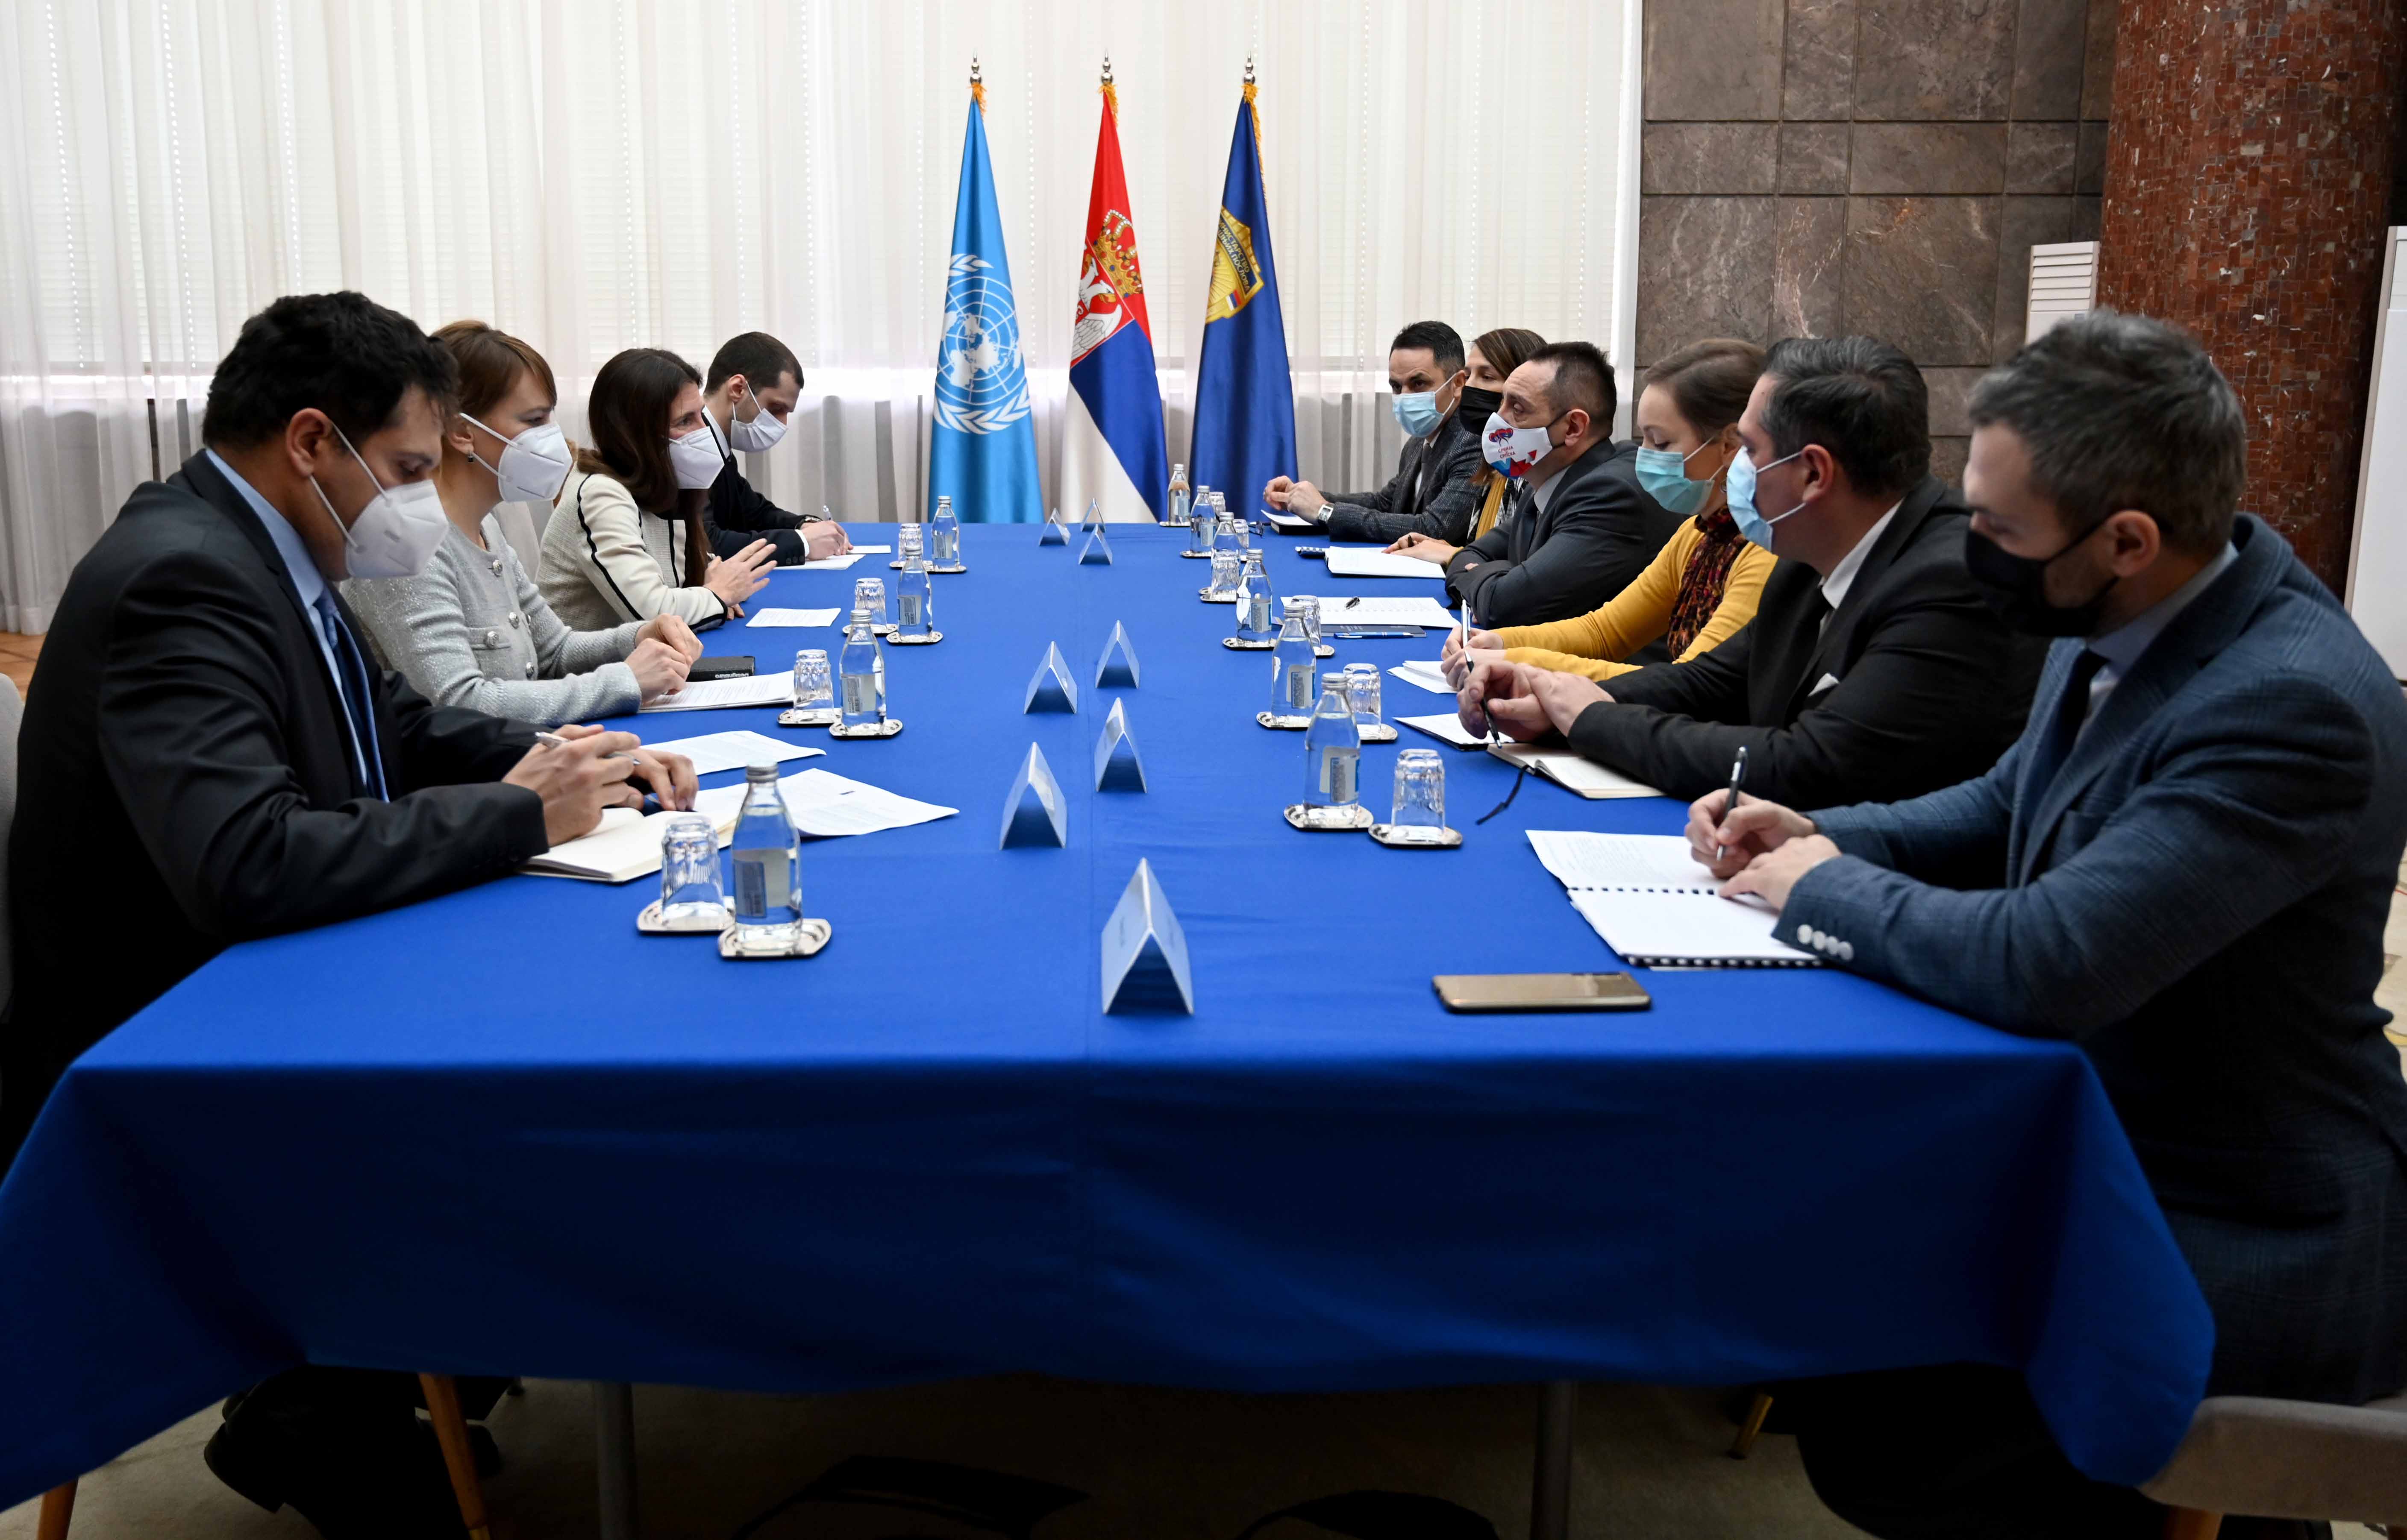 Vulin i Pikap: Ostvaren visok stepen saradnje  između Ministarstva unutrašnjih poslova i UNDP